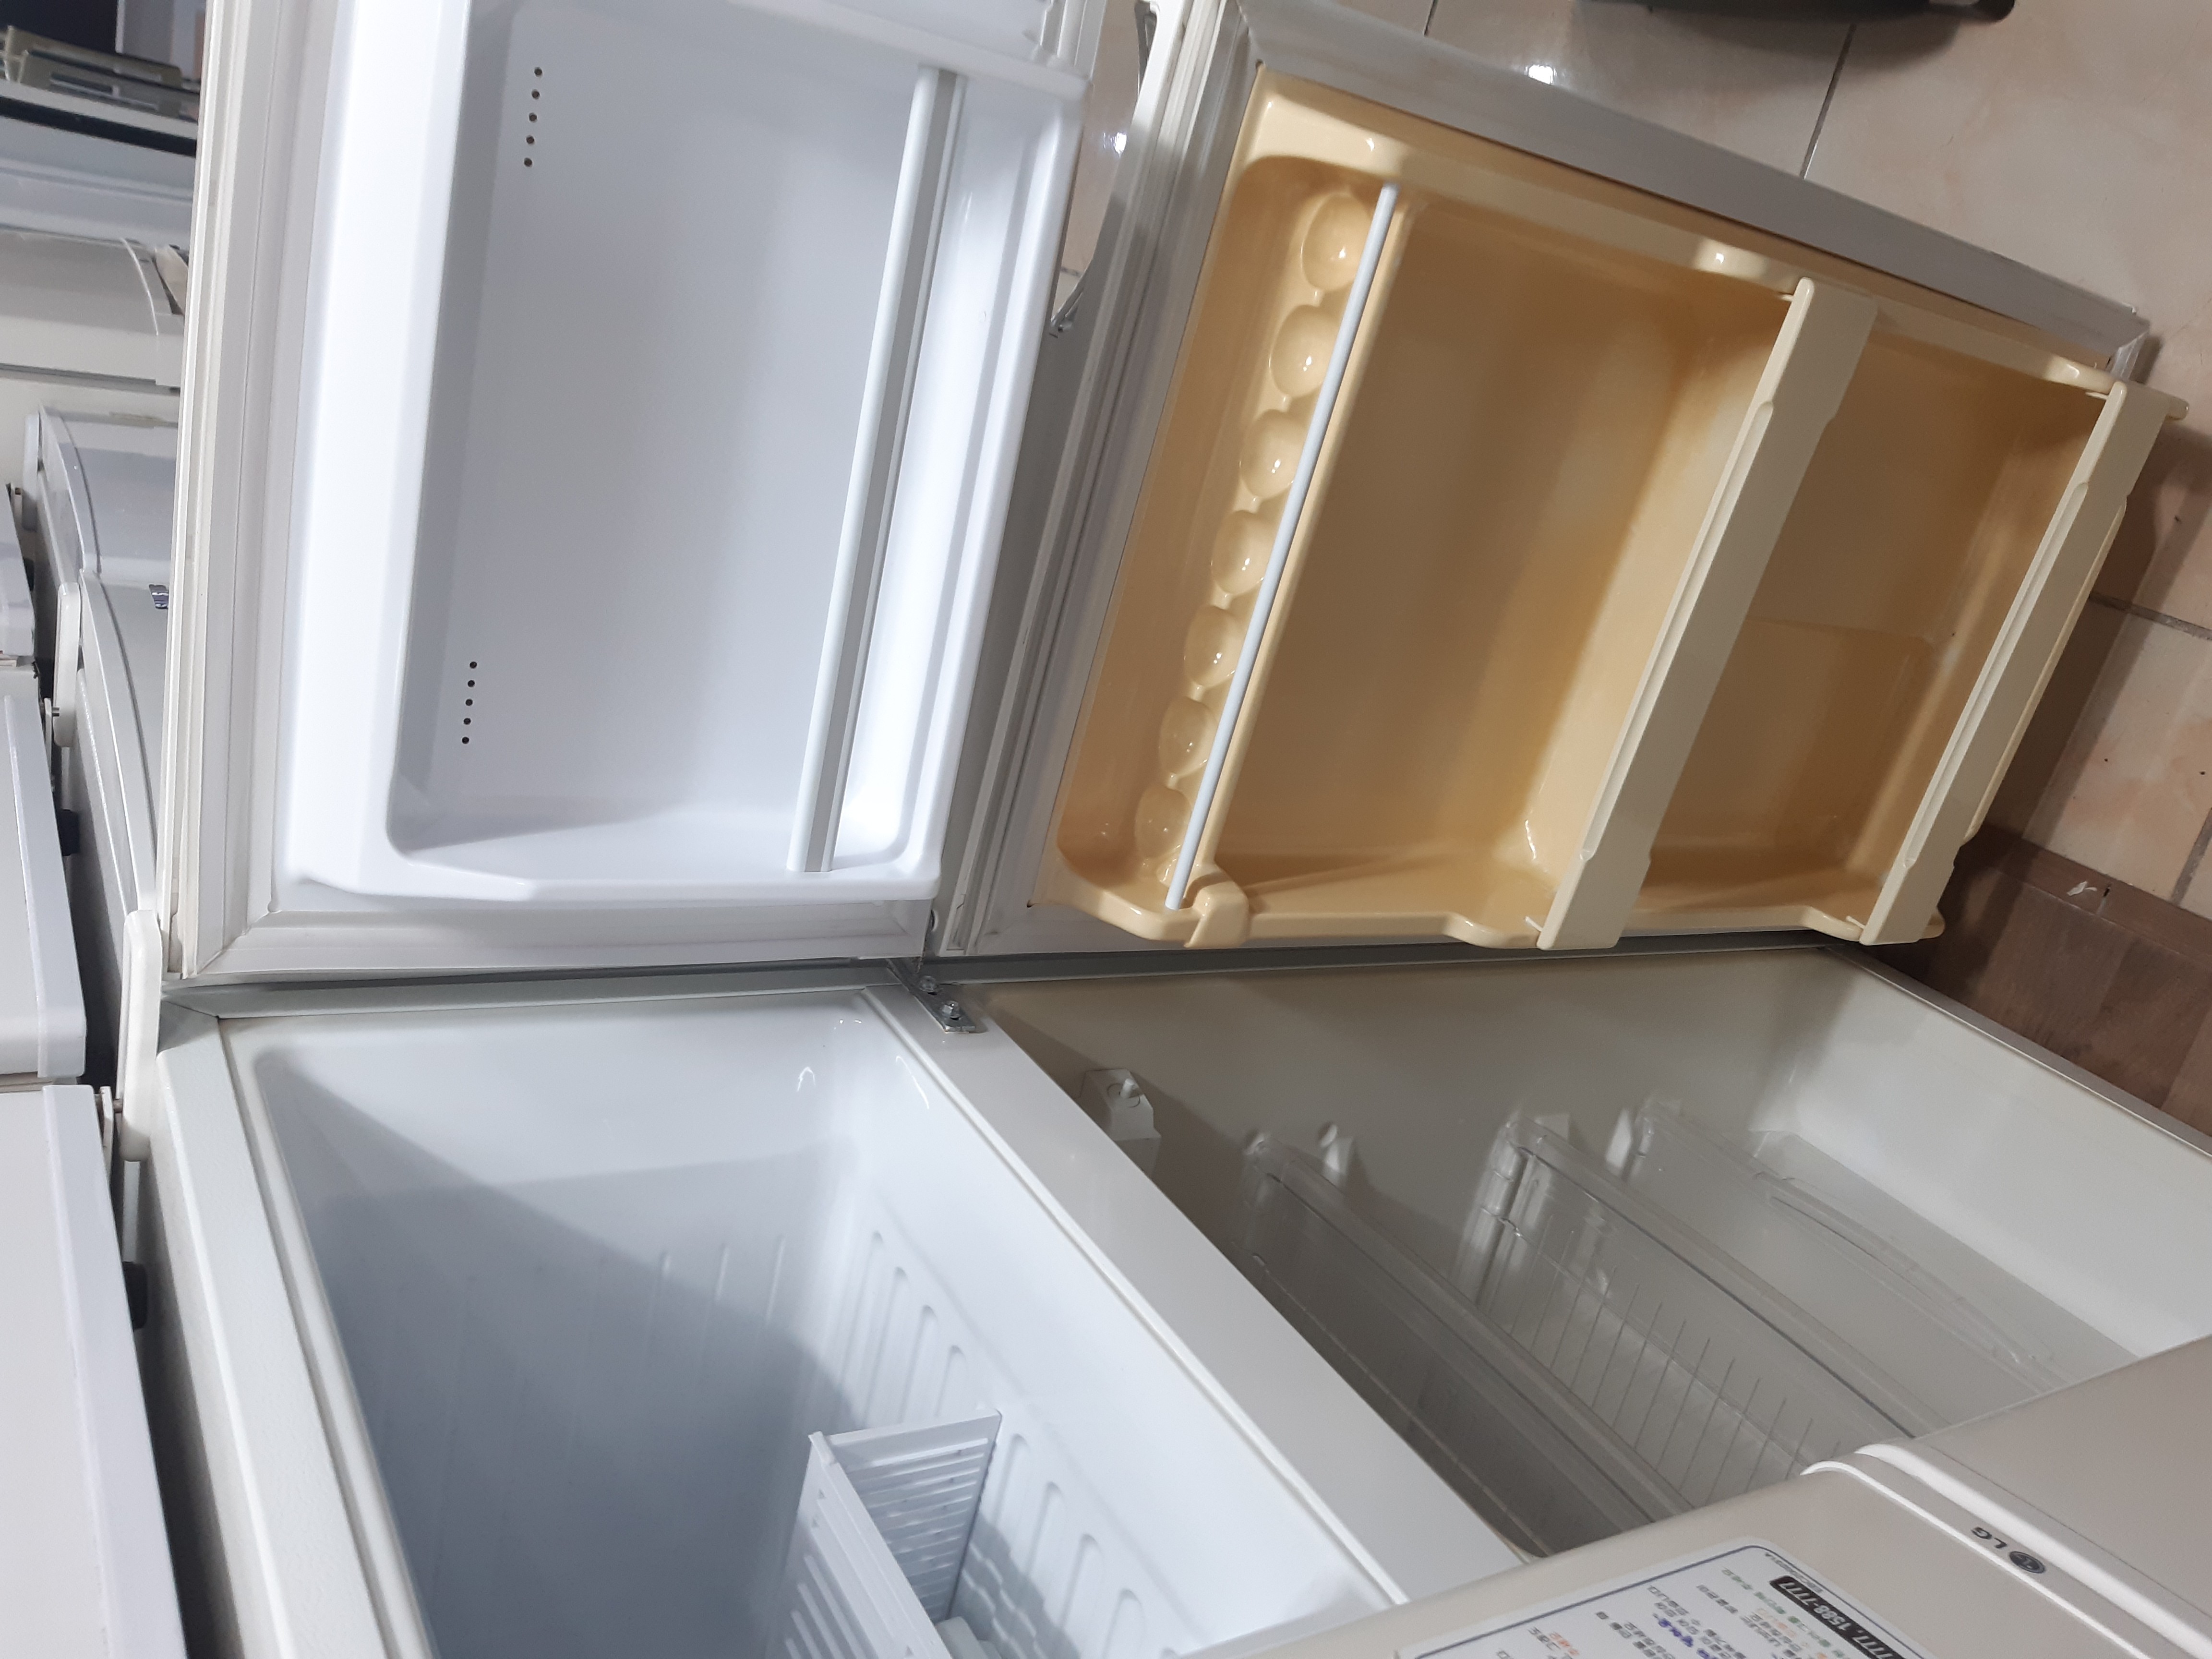 삼성 150L 냉장고